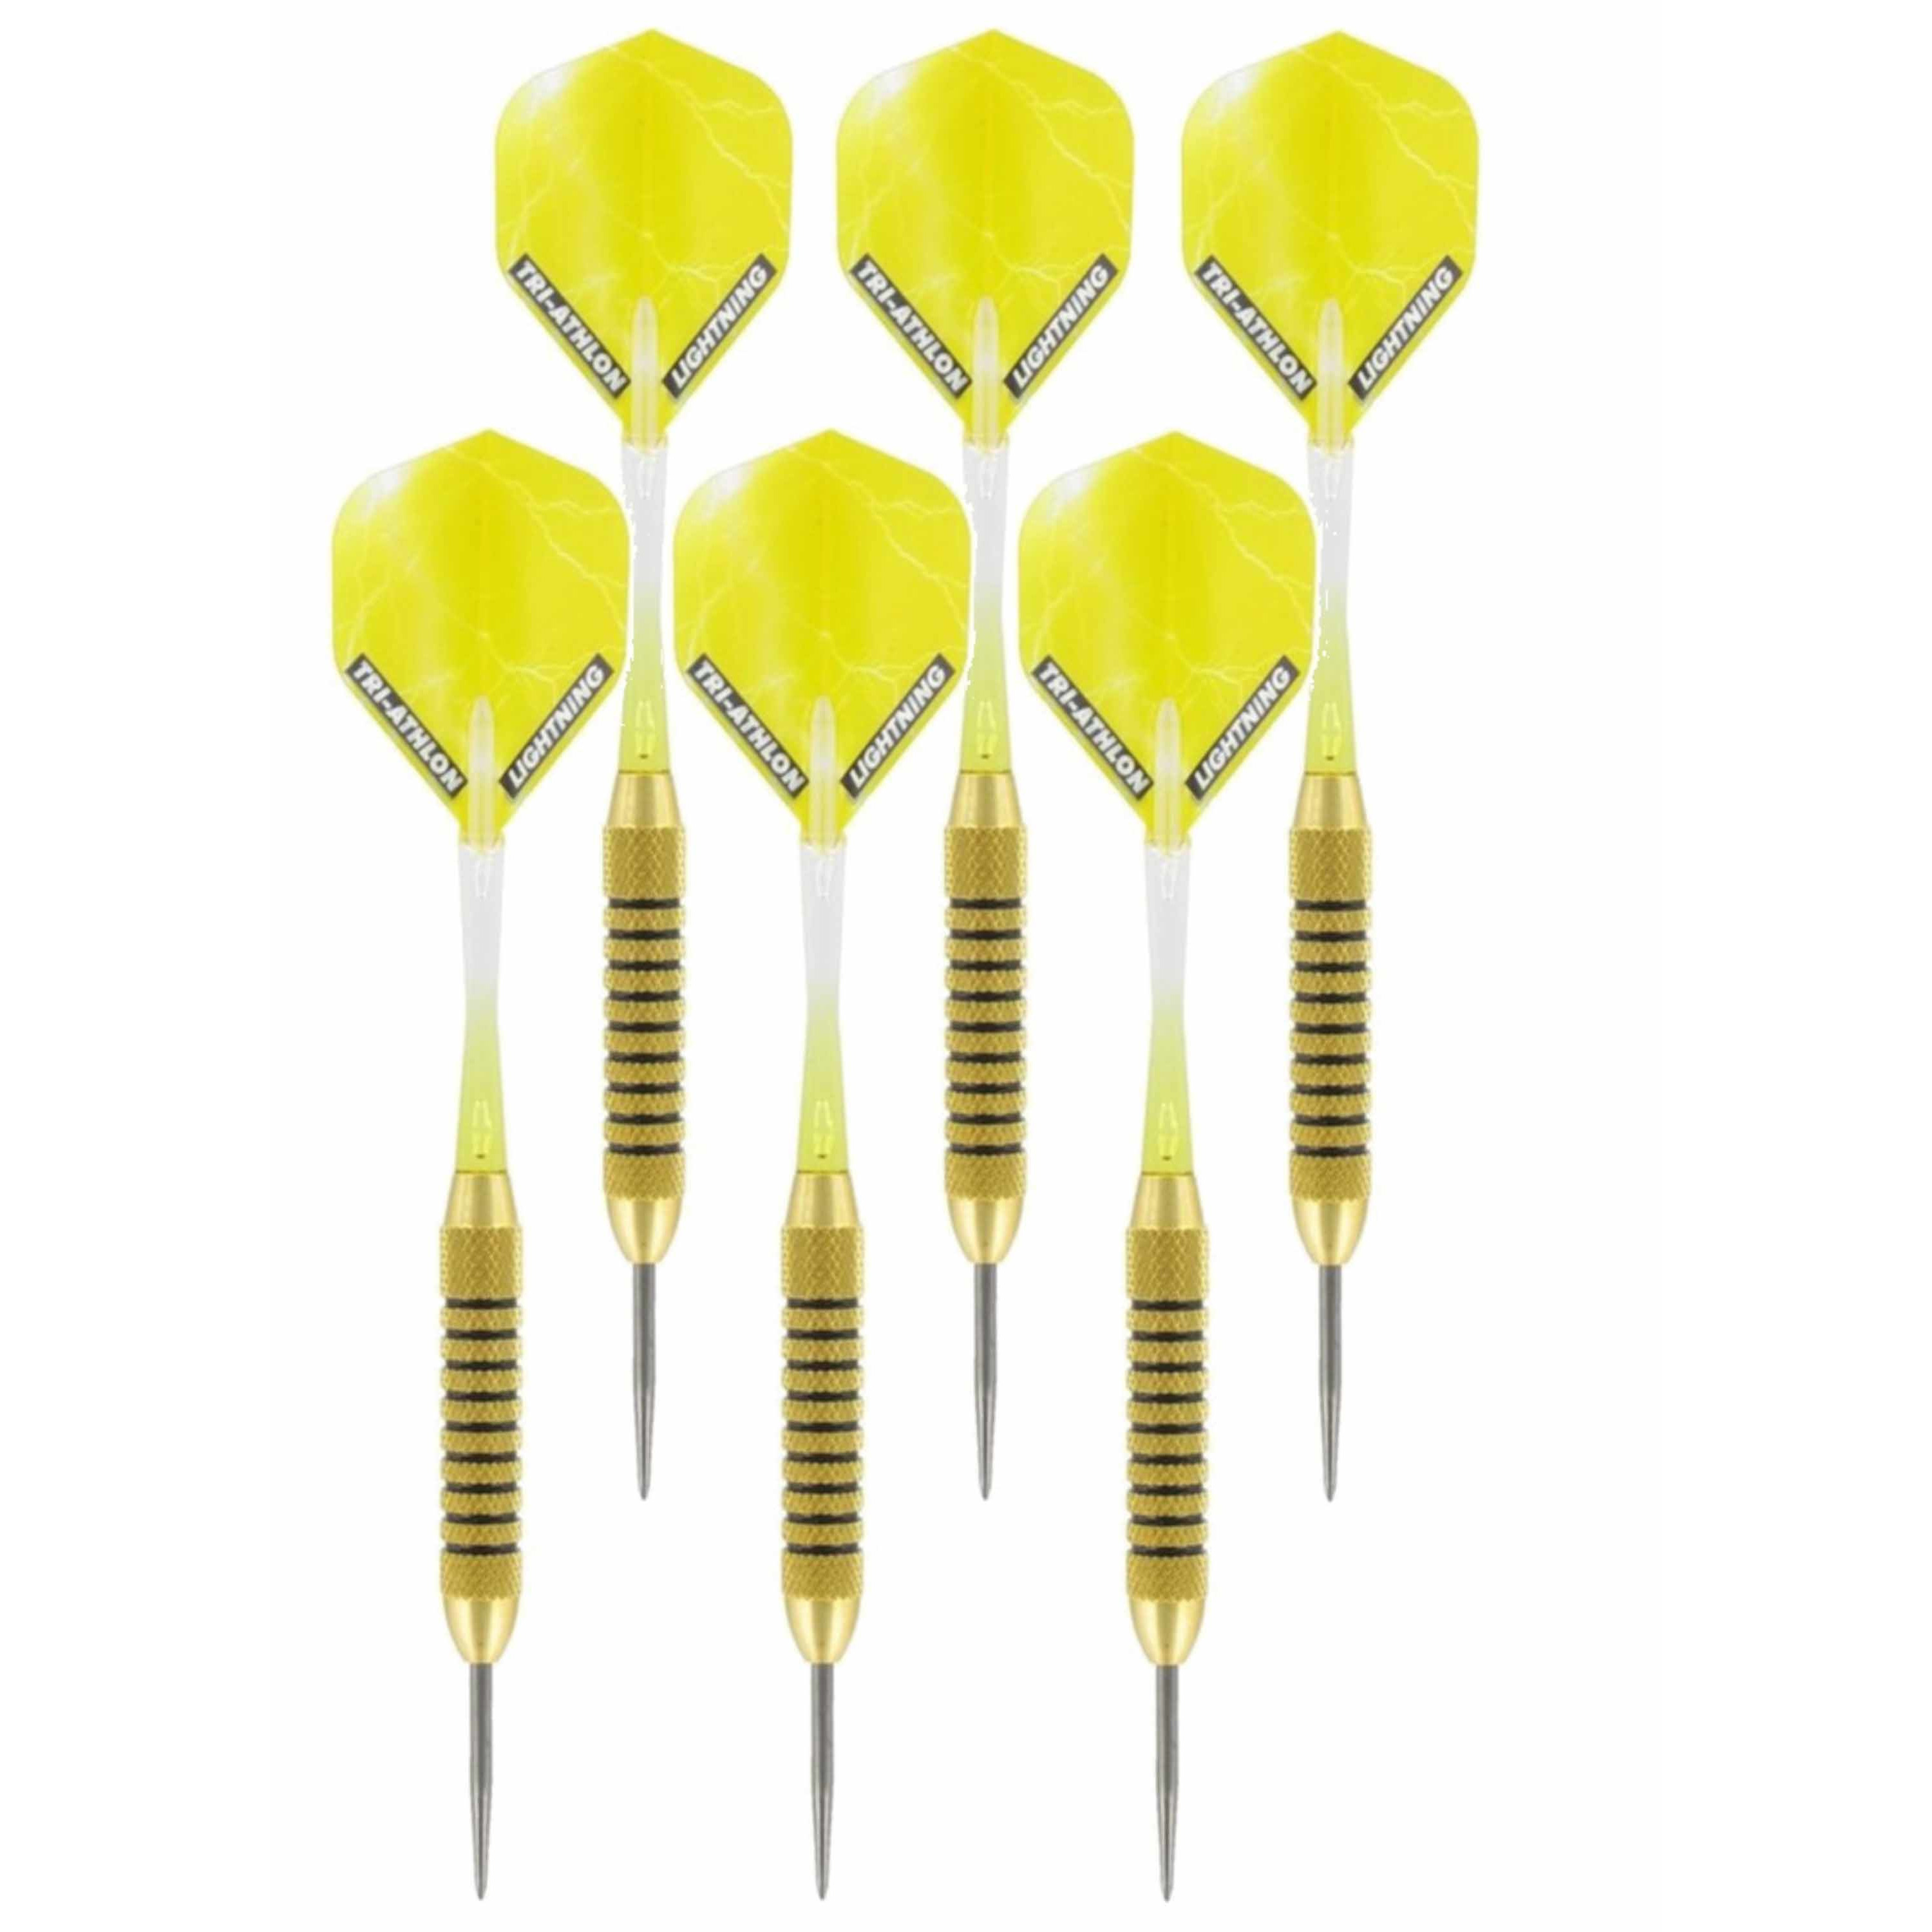 4x Set van dartpijltjes Speedy Yellow Brass met Metallic Lightning flites 21 grams